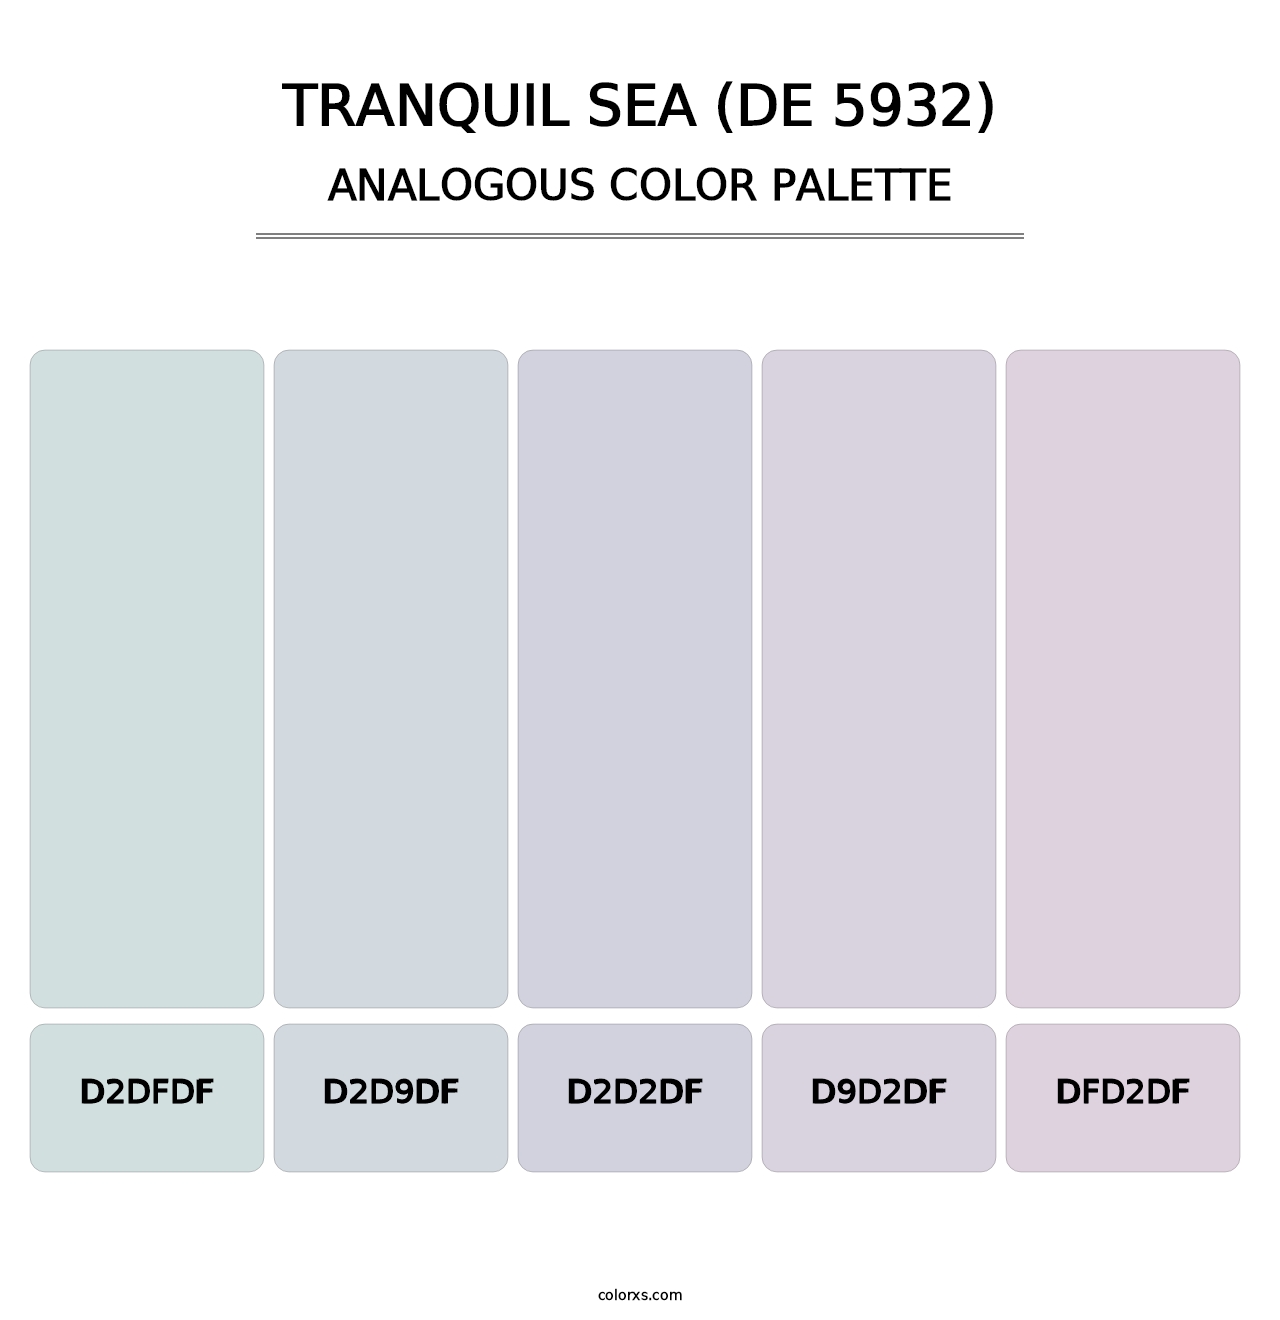 Tranquil Sea (DE 5932) - Analogous Color Palette